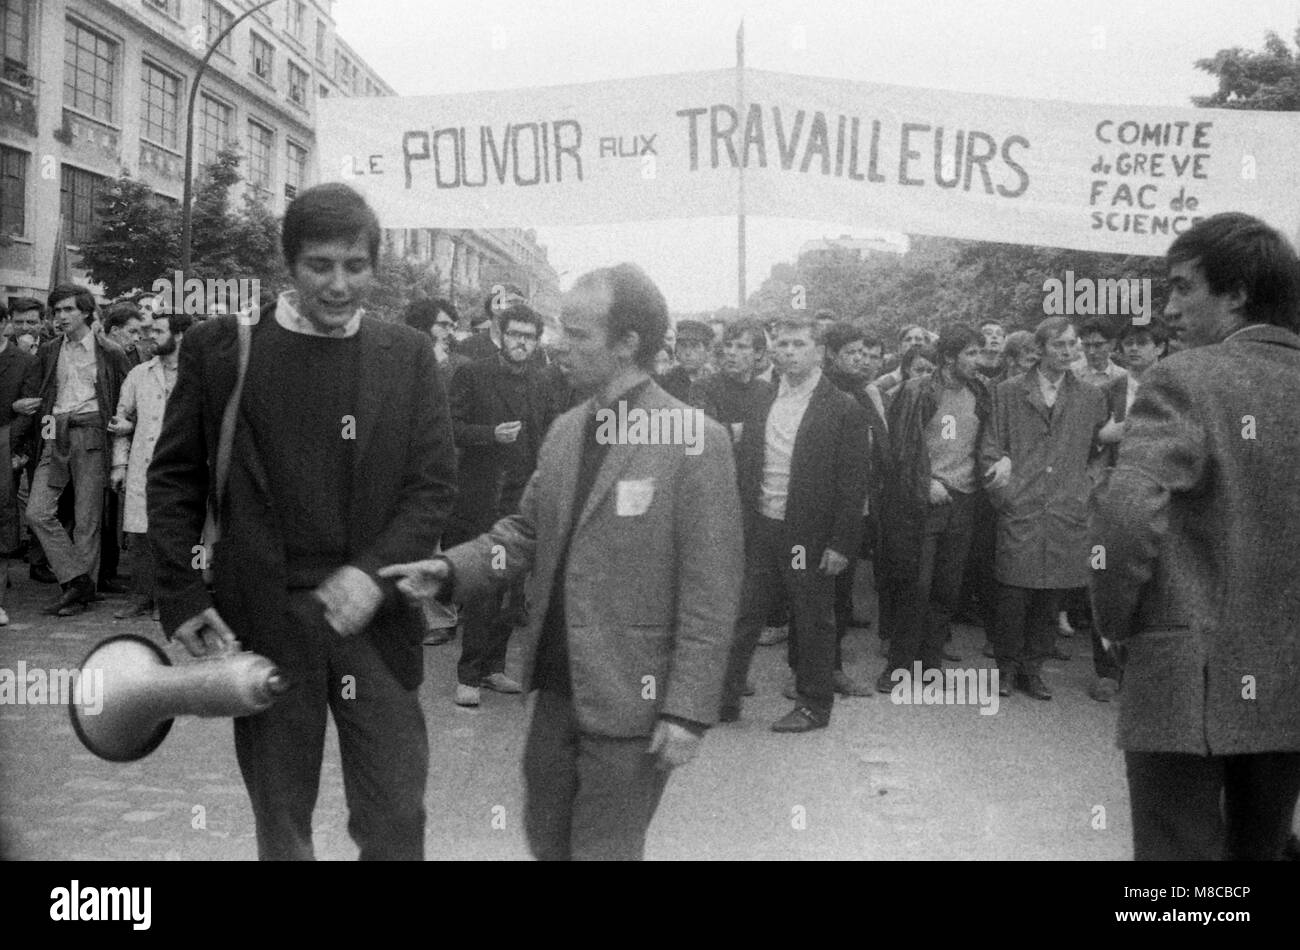 Philippe Gras / Le Pictorium - Mai 68 - 1968 - France / Ile-de-France (région) / Paris - tête de cortège d'une manifestation de travailleurs Banque D'Images